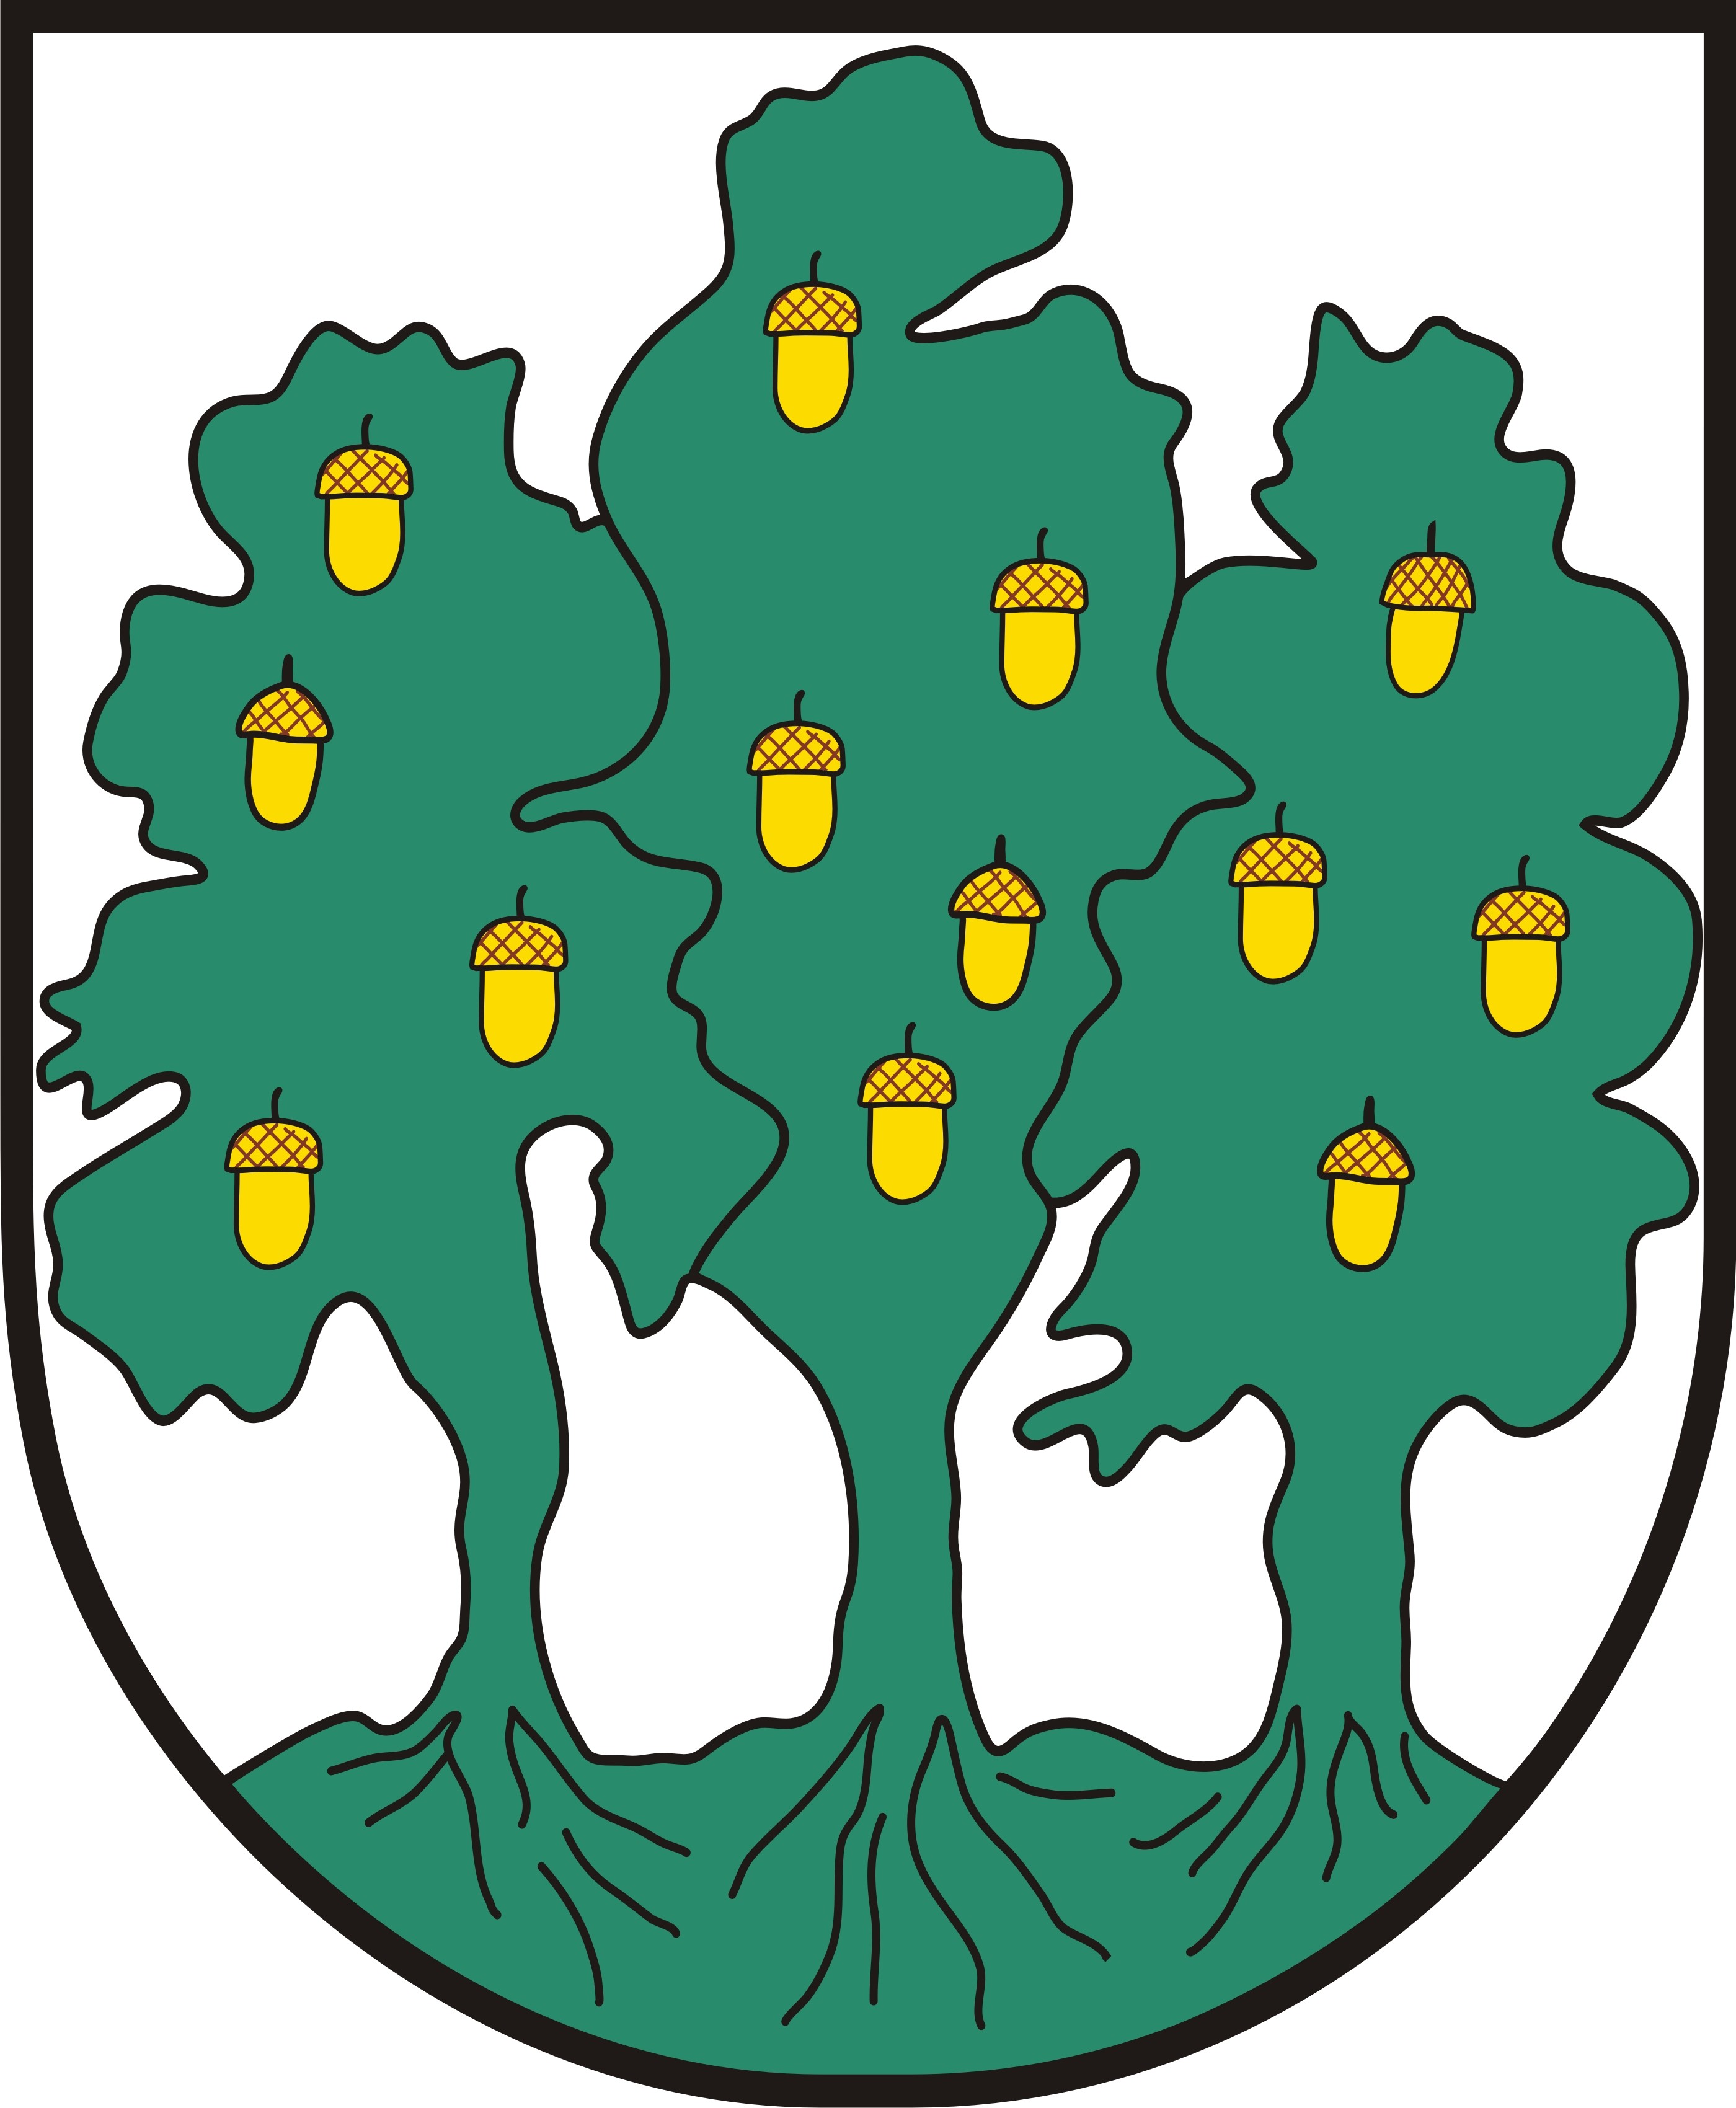 Schützenverein "Horrido" Ingeln von 1920 e.V.